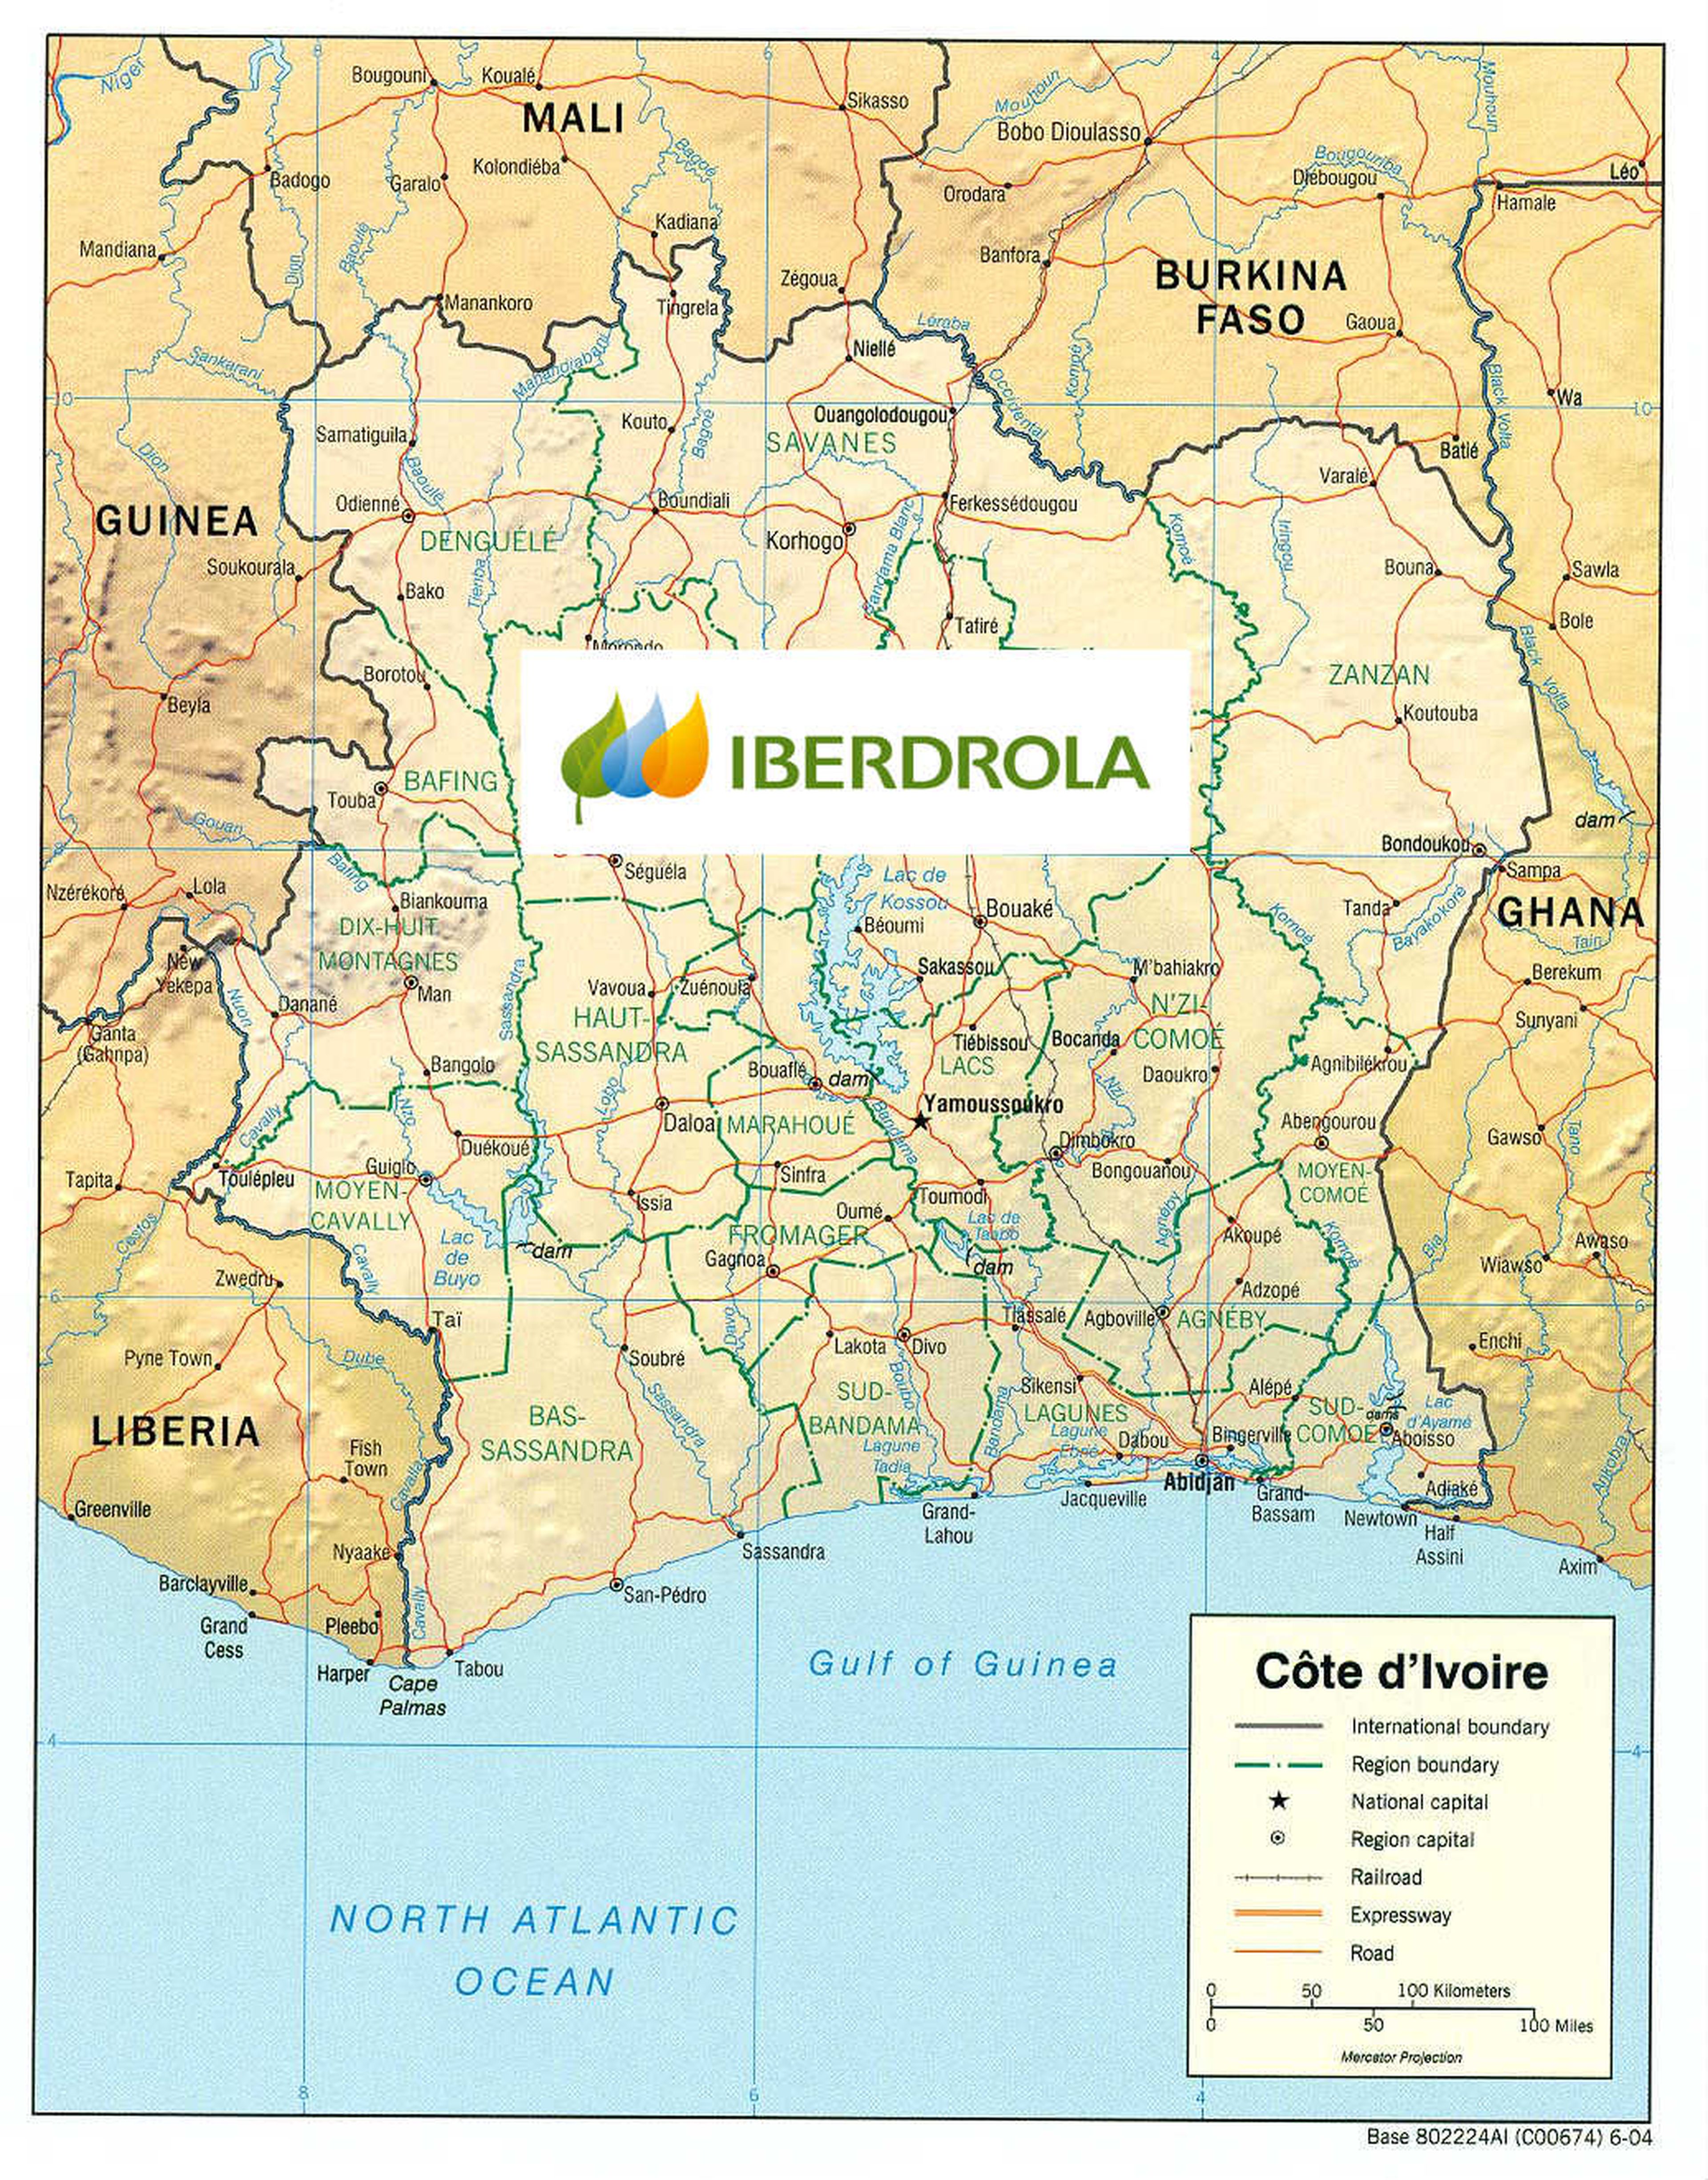 Iberdrola Costa de Marfil